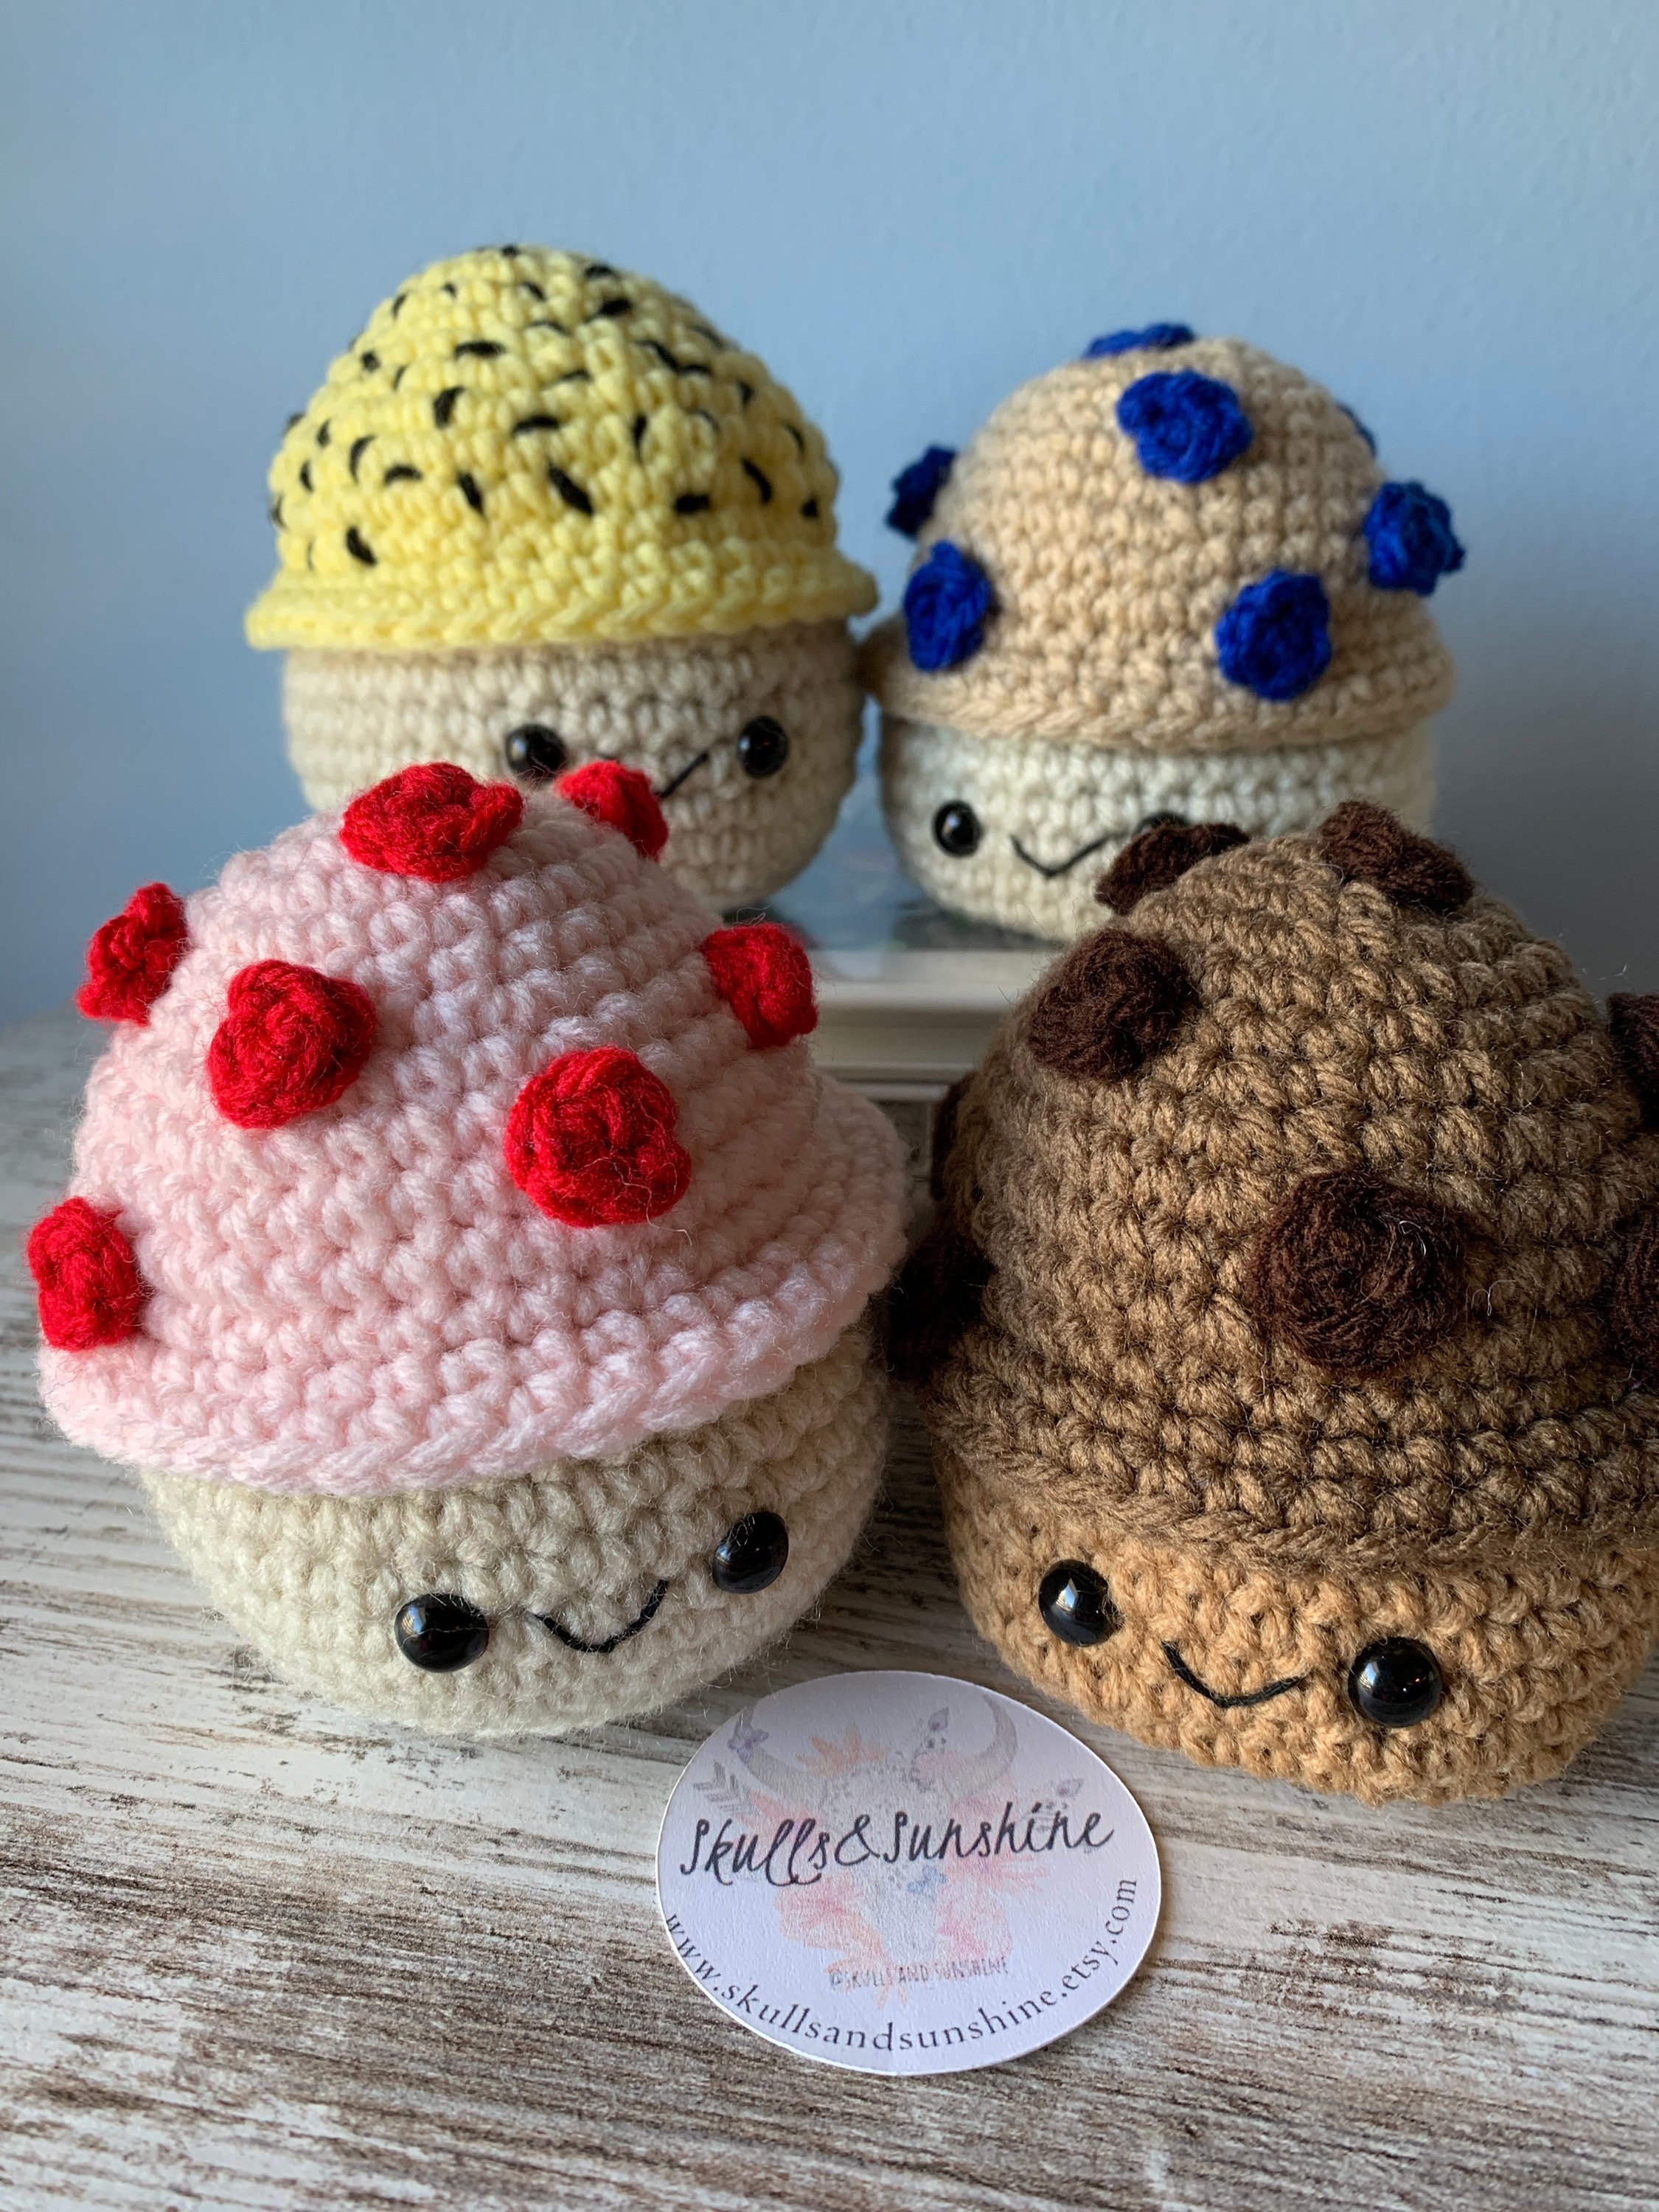 Crochet Cafe Amigurumi Book Review - Tiny Curl Crochet